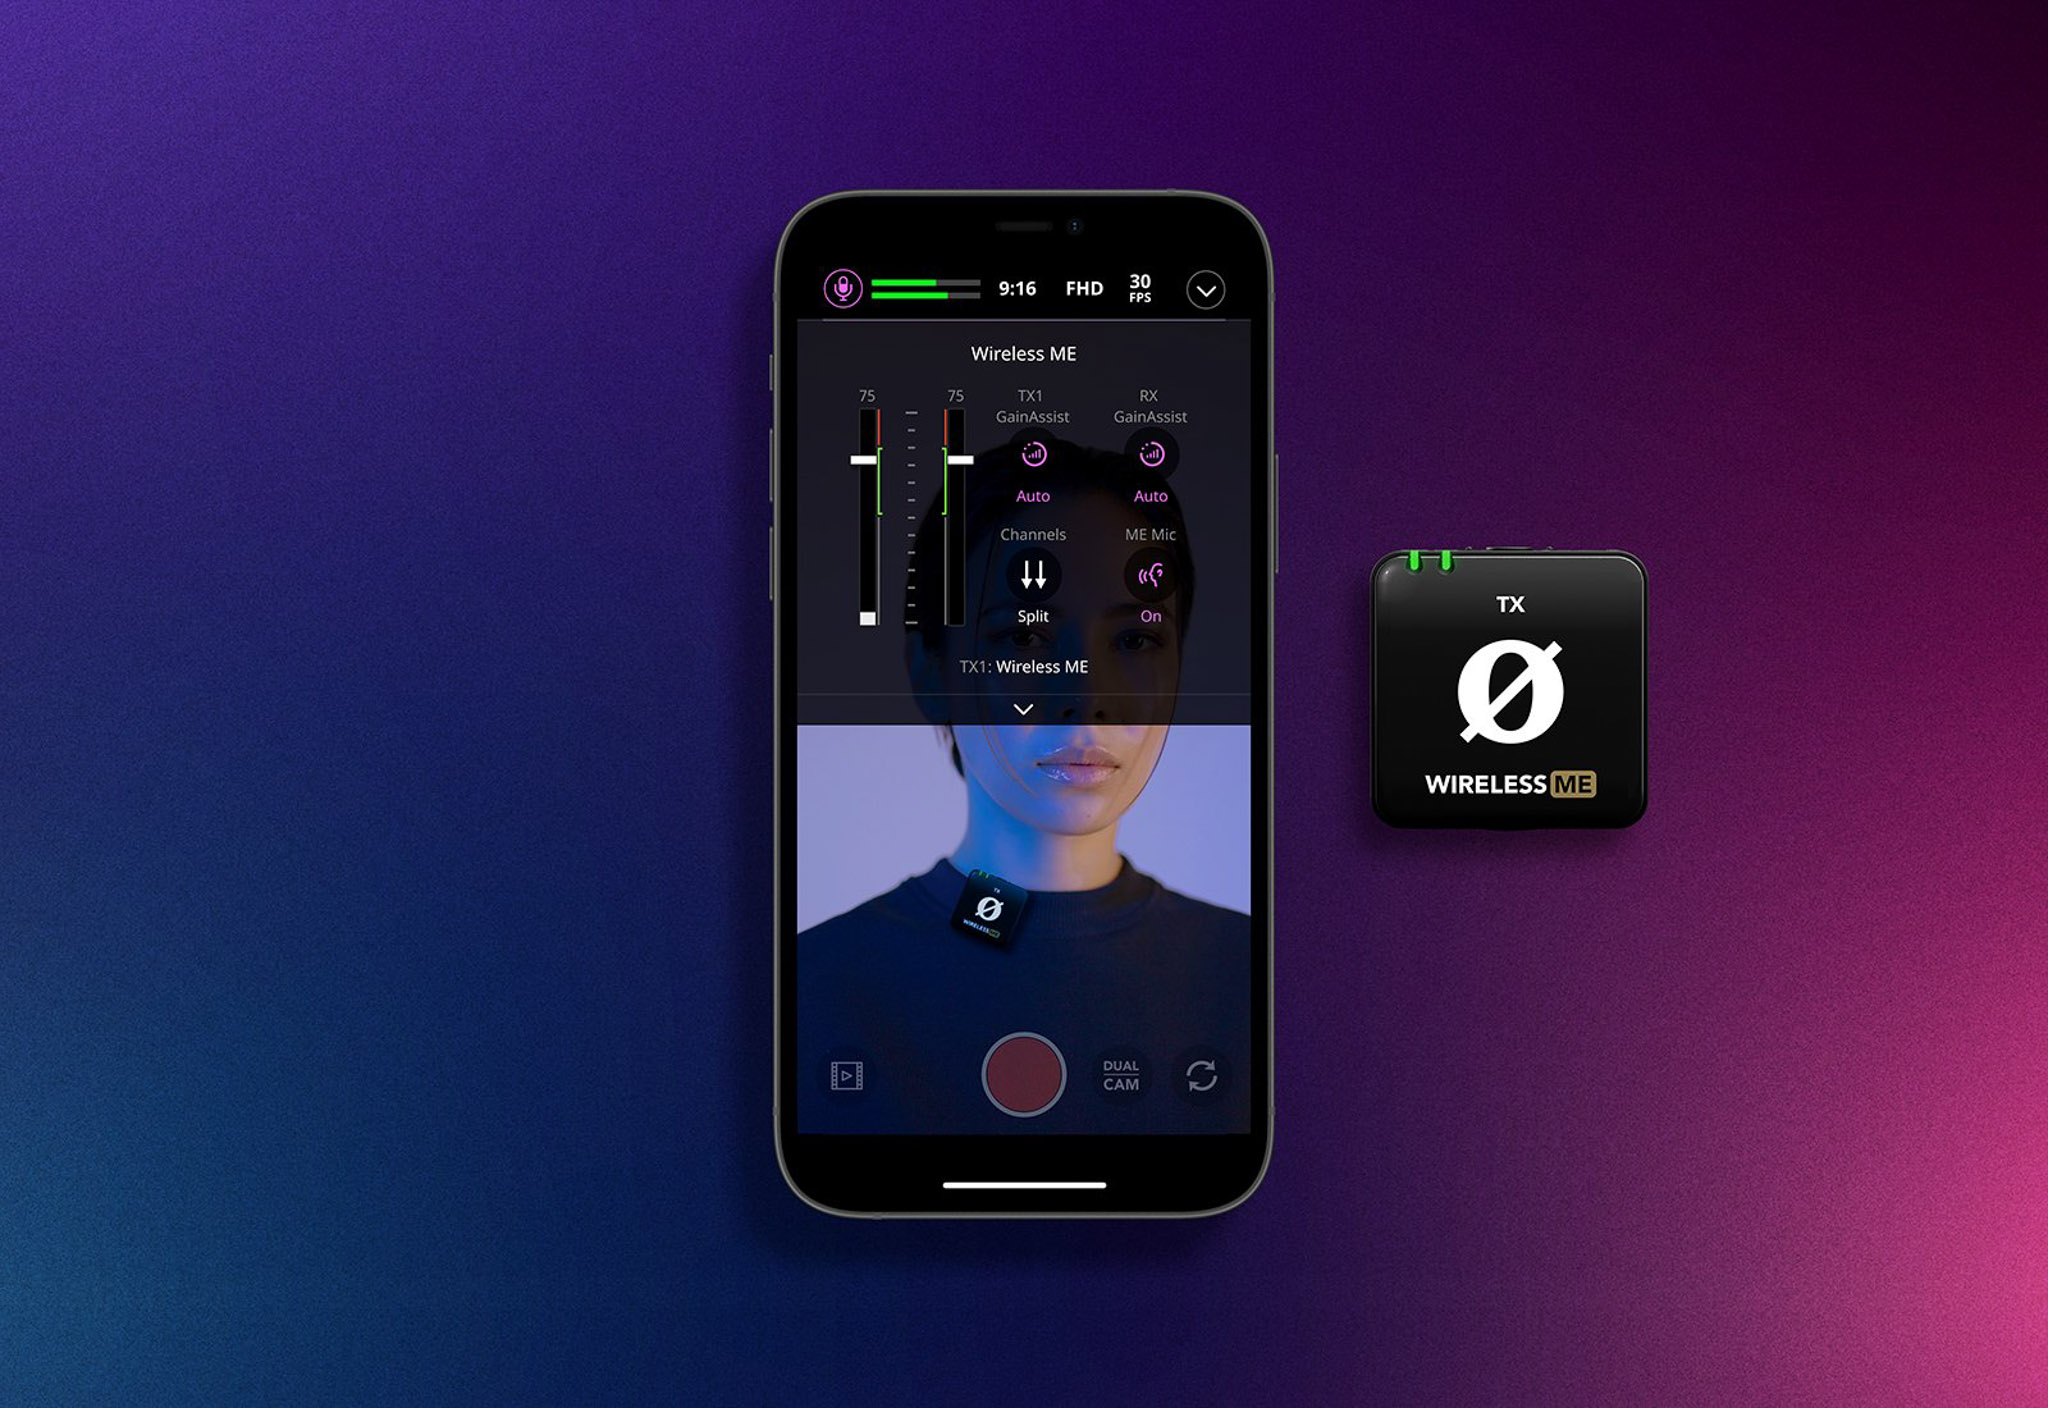 Capture - Ứng dụng của RØDE cho iOS, hỗ trợ quay video và ghi âm chuyên nghiệp